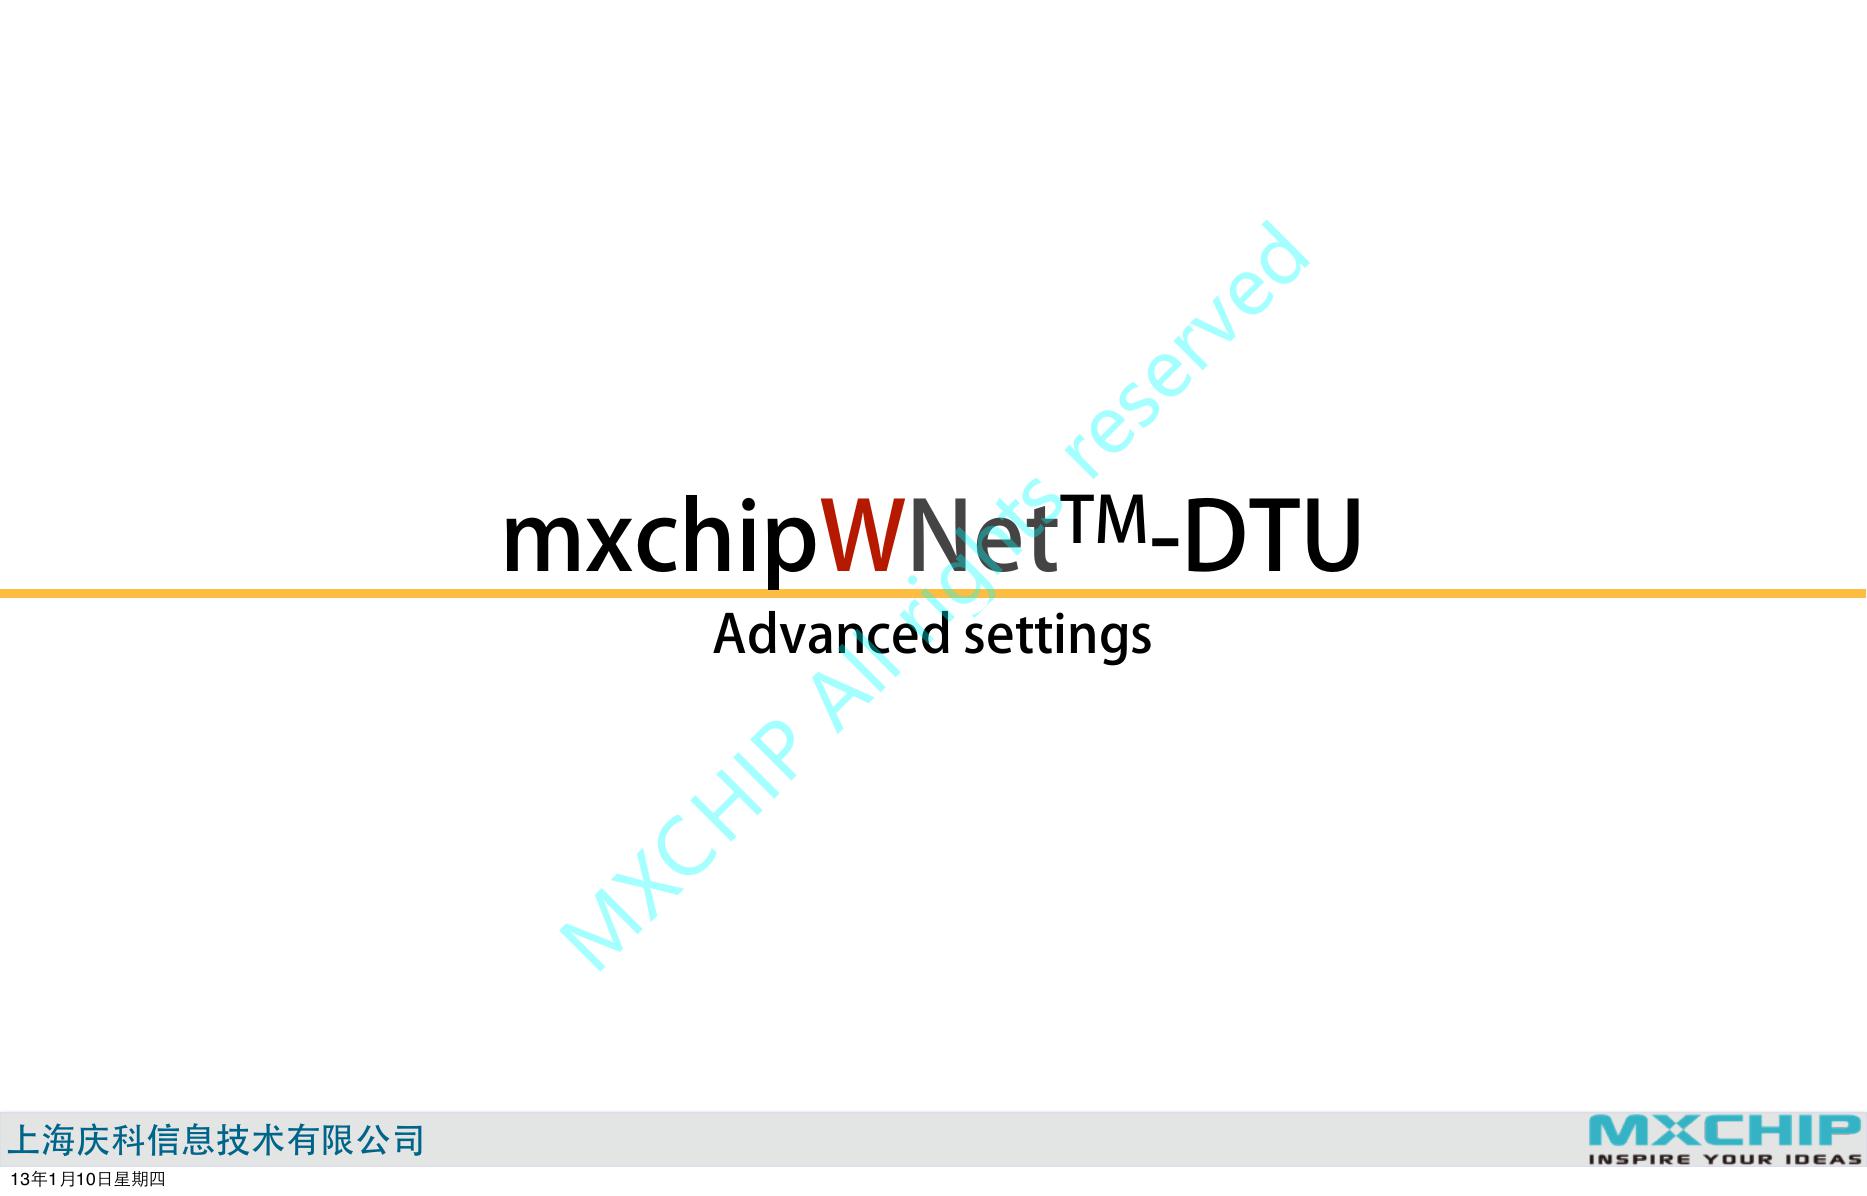 mxchipWNet-DTU串口透传固件的高级设置(AD0004_mxchipWNet_DTU_ad_setting).pdf